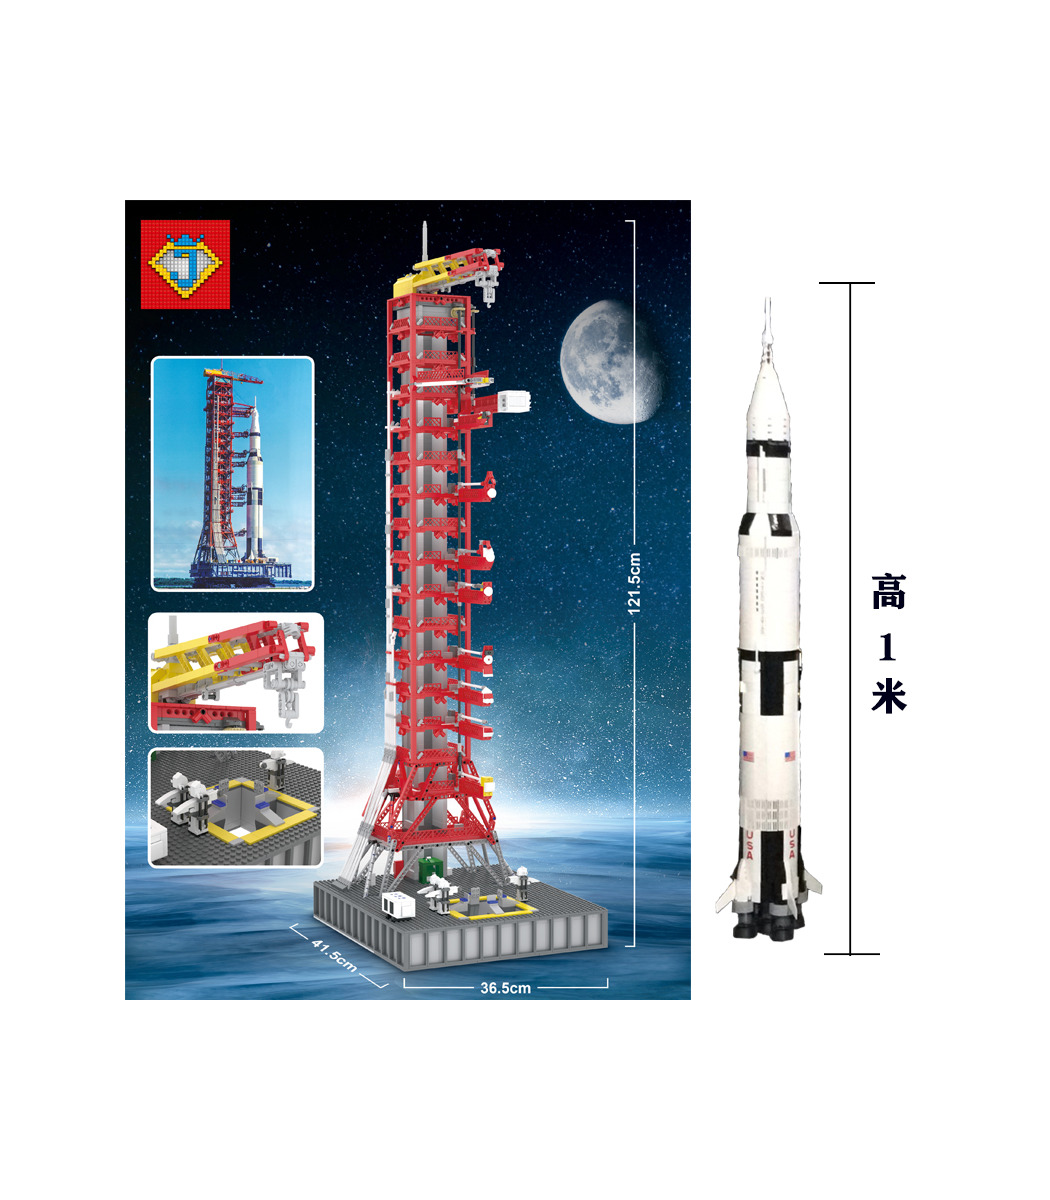 カスタムjアポロサターンv型発射台タワー建物の煉瓦玩具セット3561枚 Buildingtoystore Com